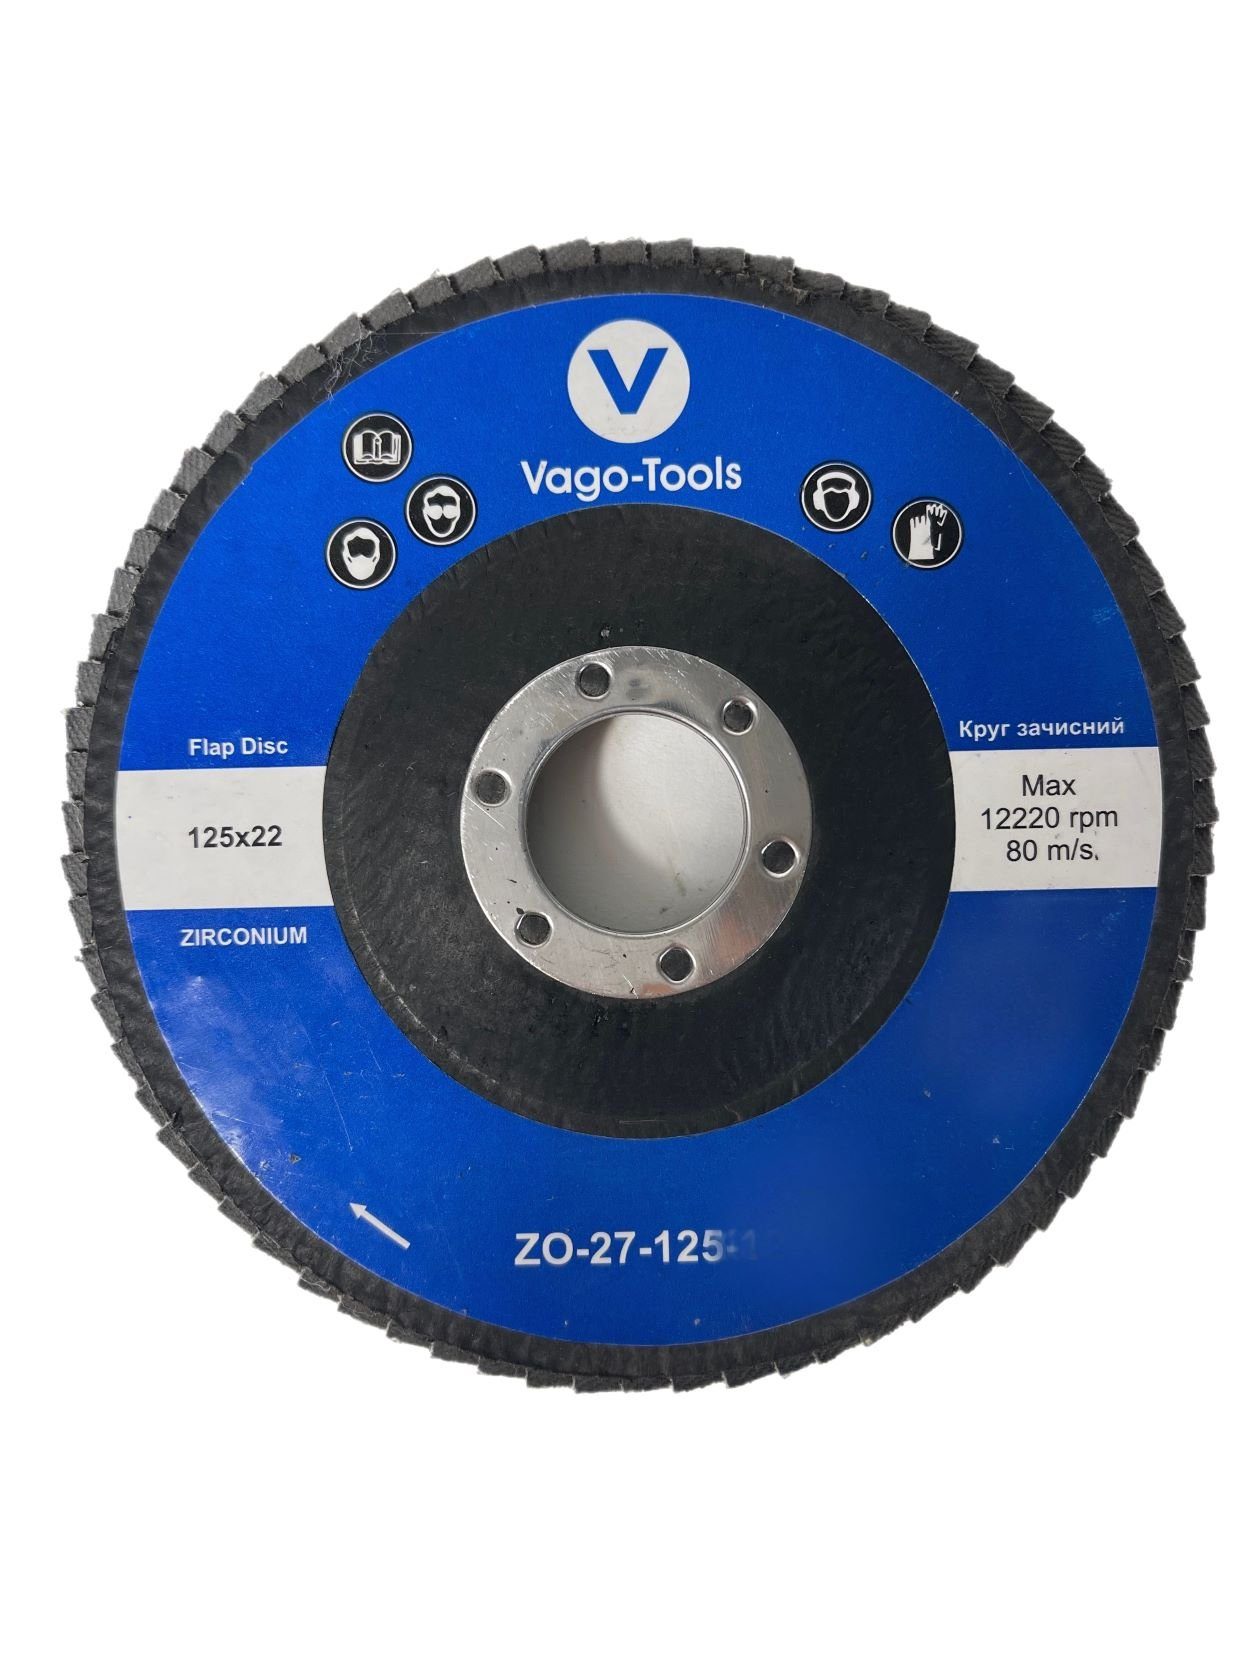 VaGo-Tools Schleifscheibe Fächerschleifscheiben 125mm P60 flach Blau 10x, (Packung)